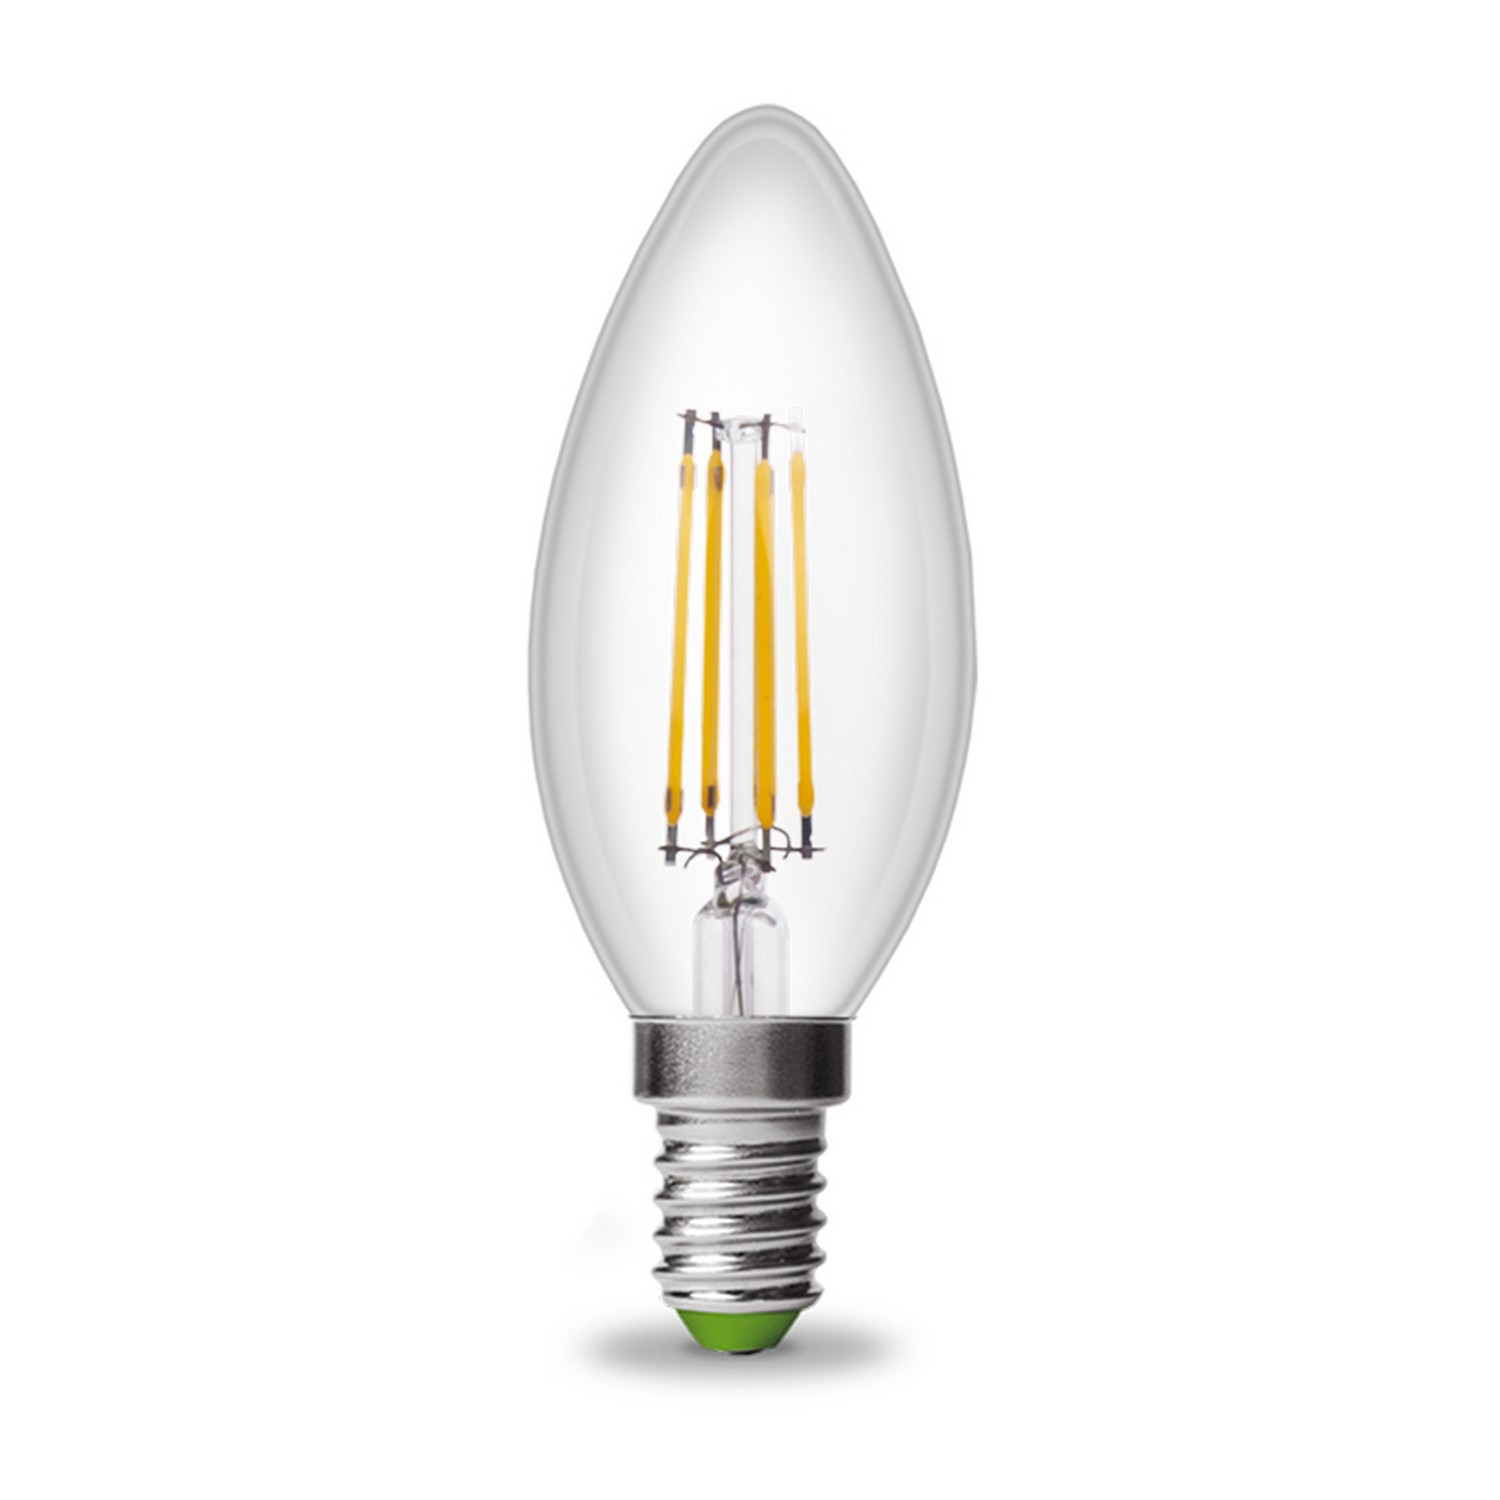 Лампа Eurolamp LED EKO Свеча филамент 4W E14 4000K акция "1+1" цена 0.00 грн - фотография 2